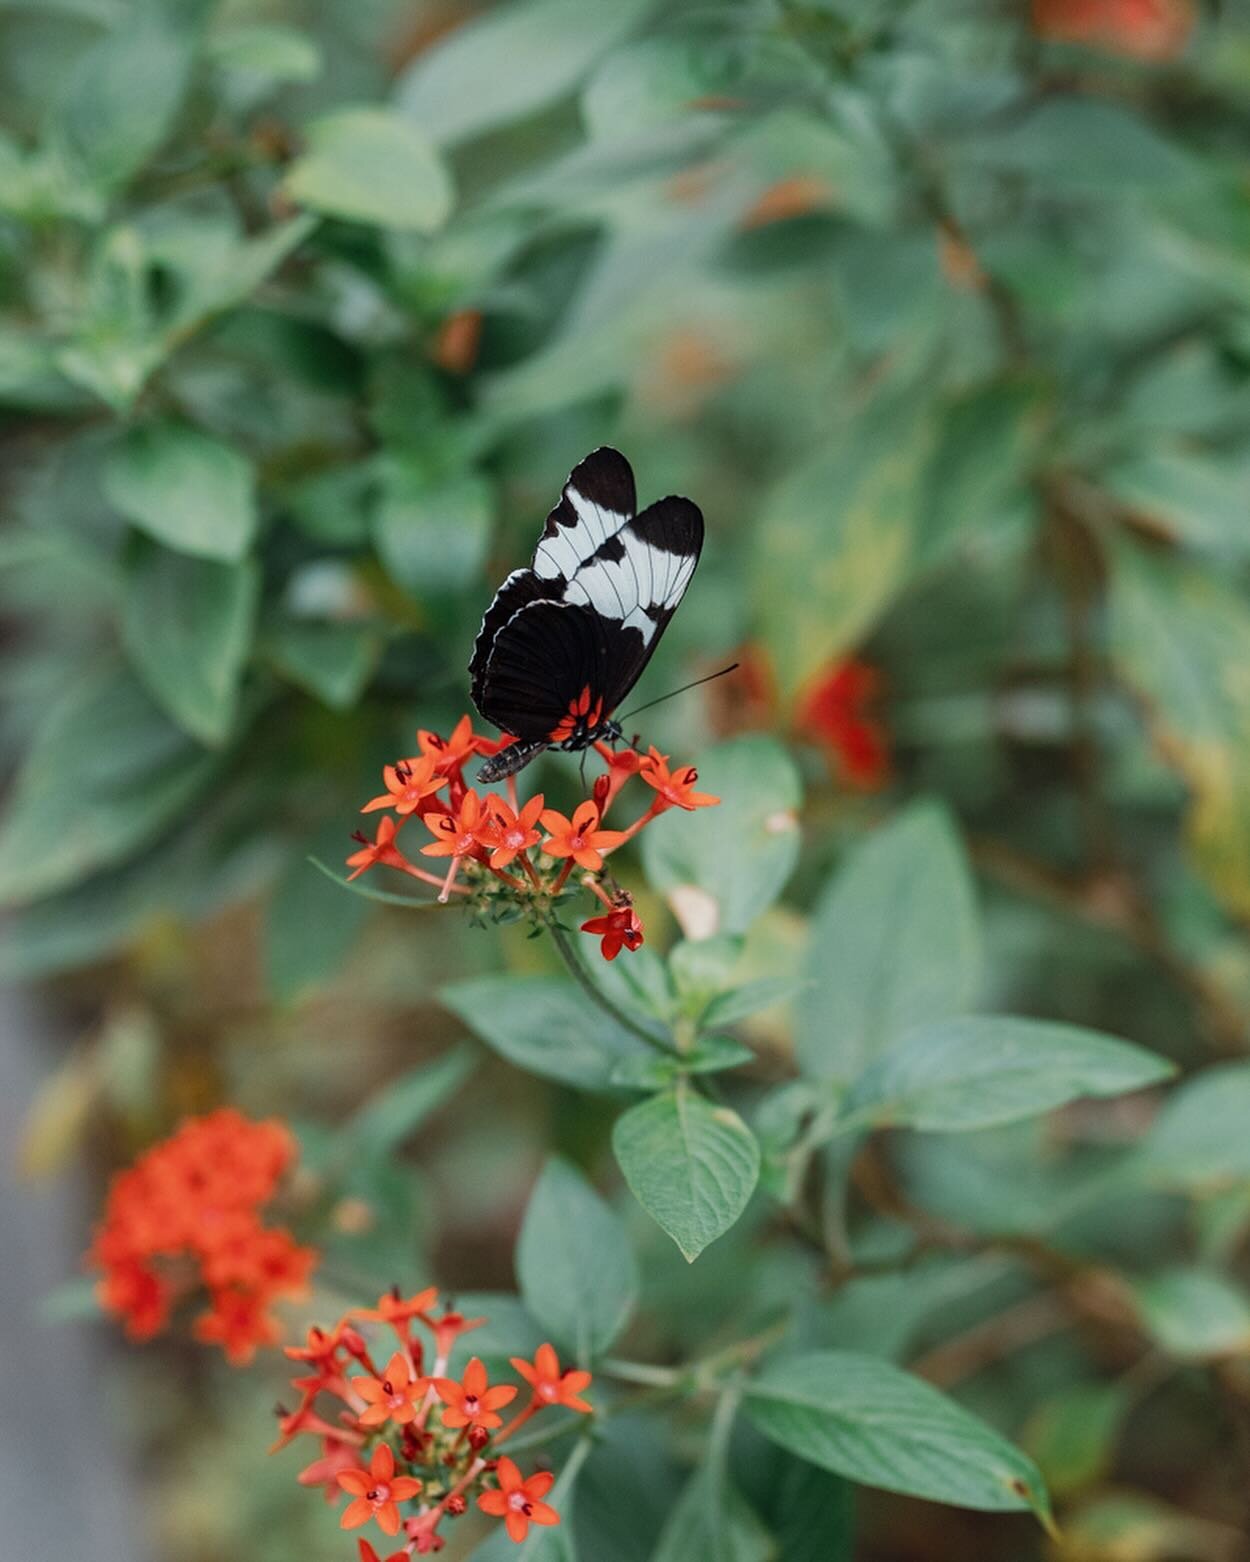 My wandering butterflies 🦋 #fairchildtropicalgarden 

Link in bio for 📸 photography work.